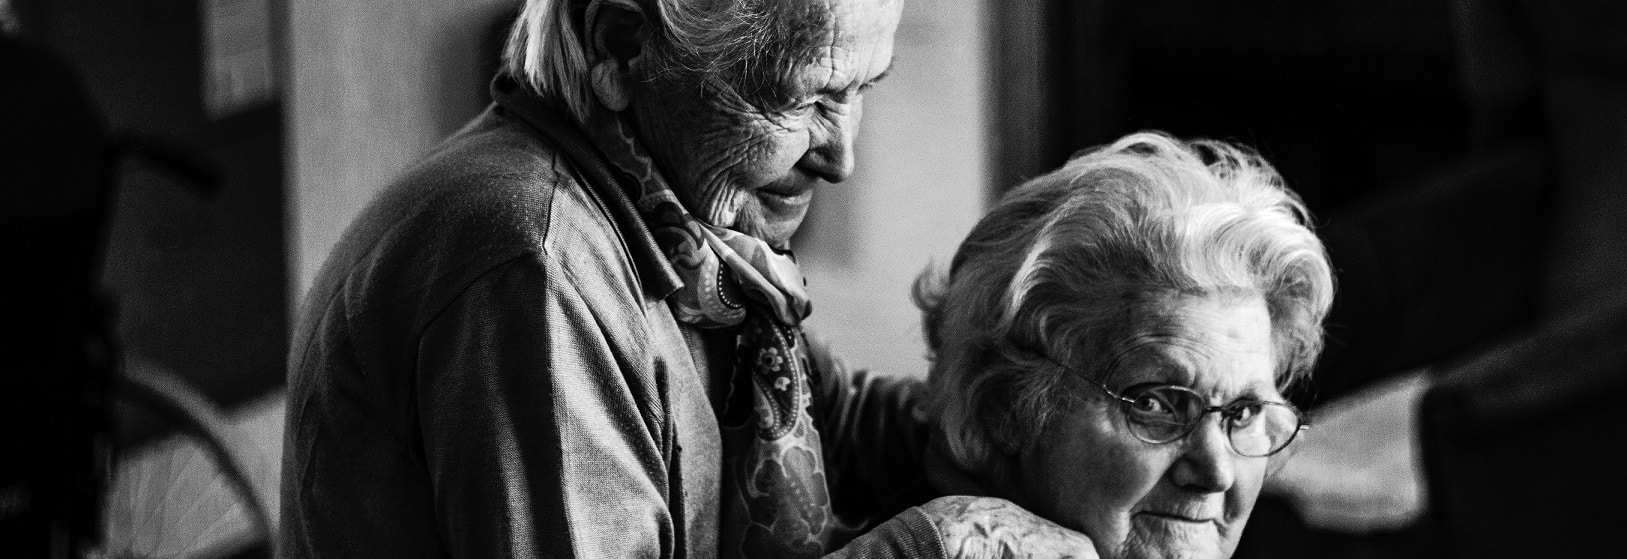 Two_older_Women-Photo_by_Eberhard_Grossgasteiger_on_Unsplash-cropped